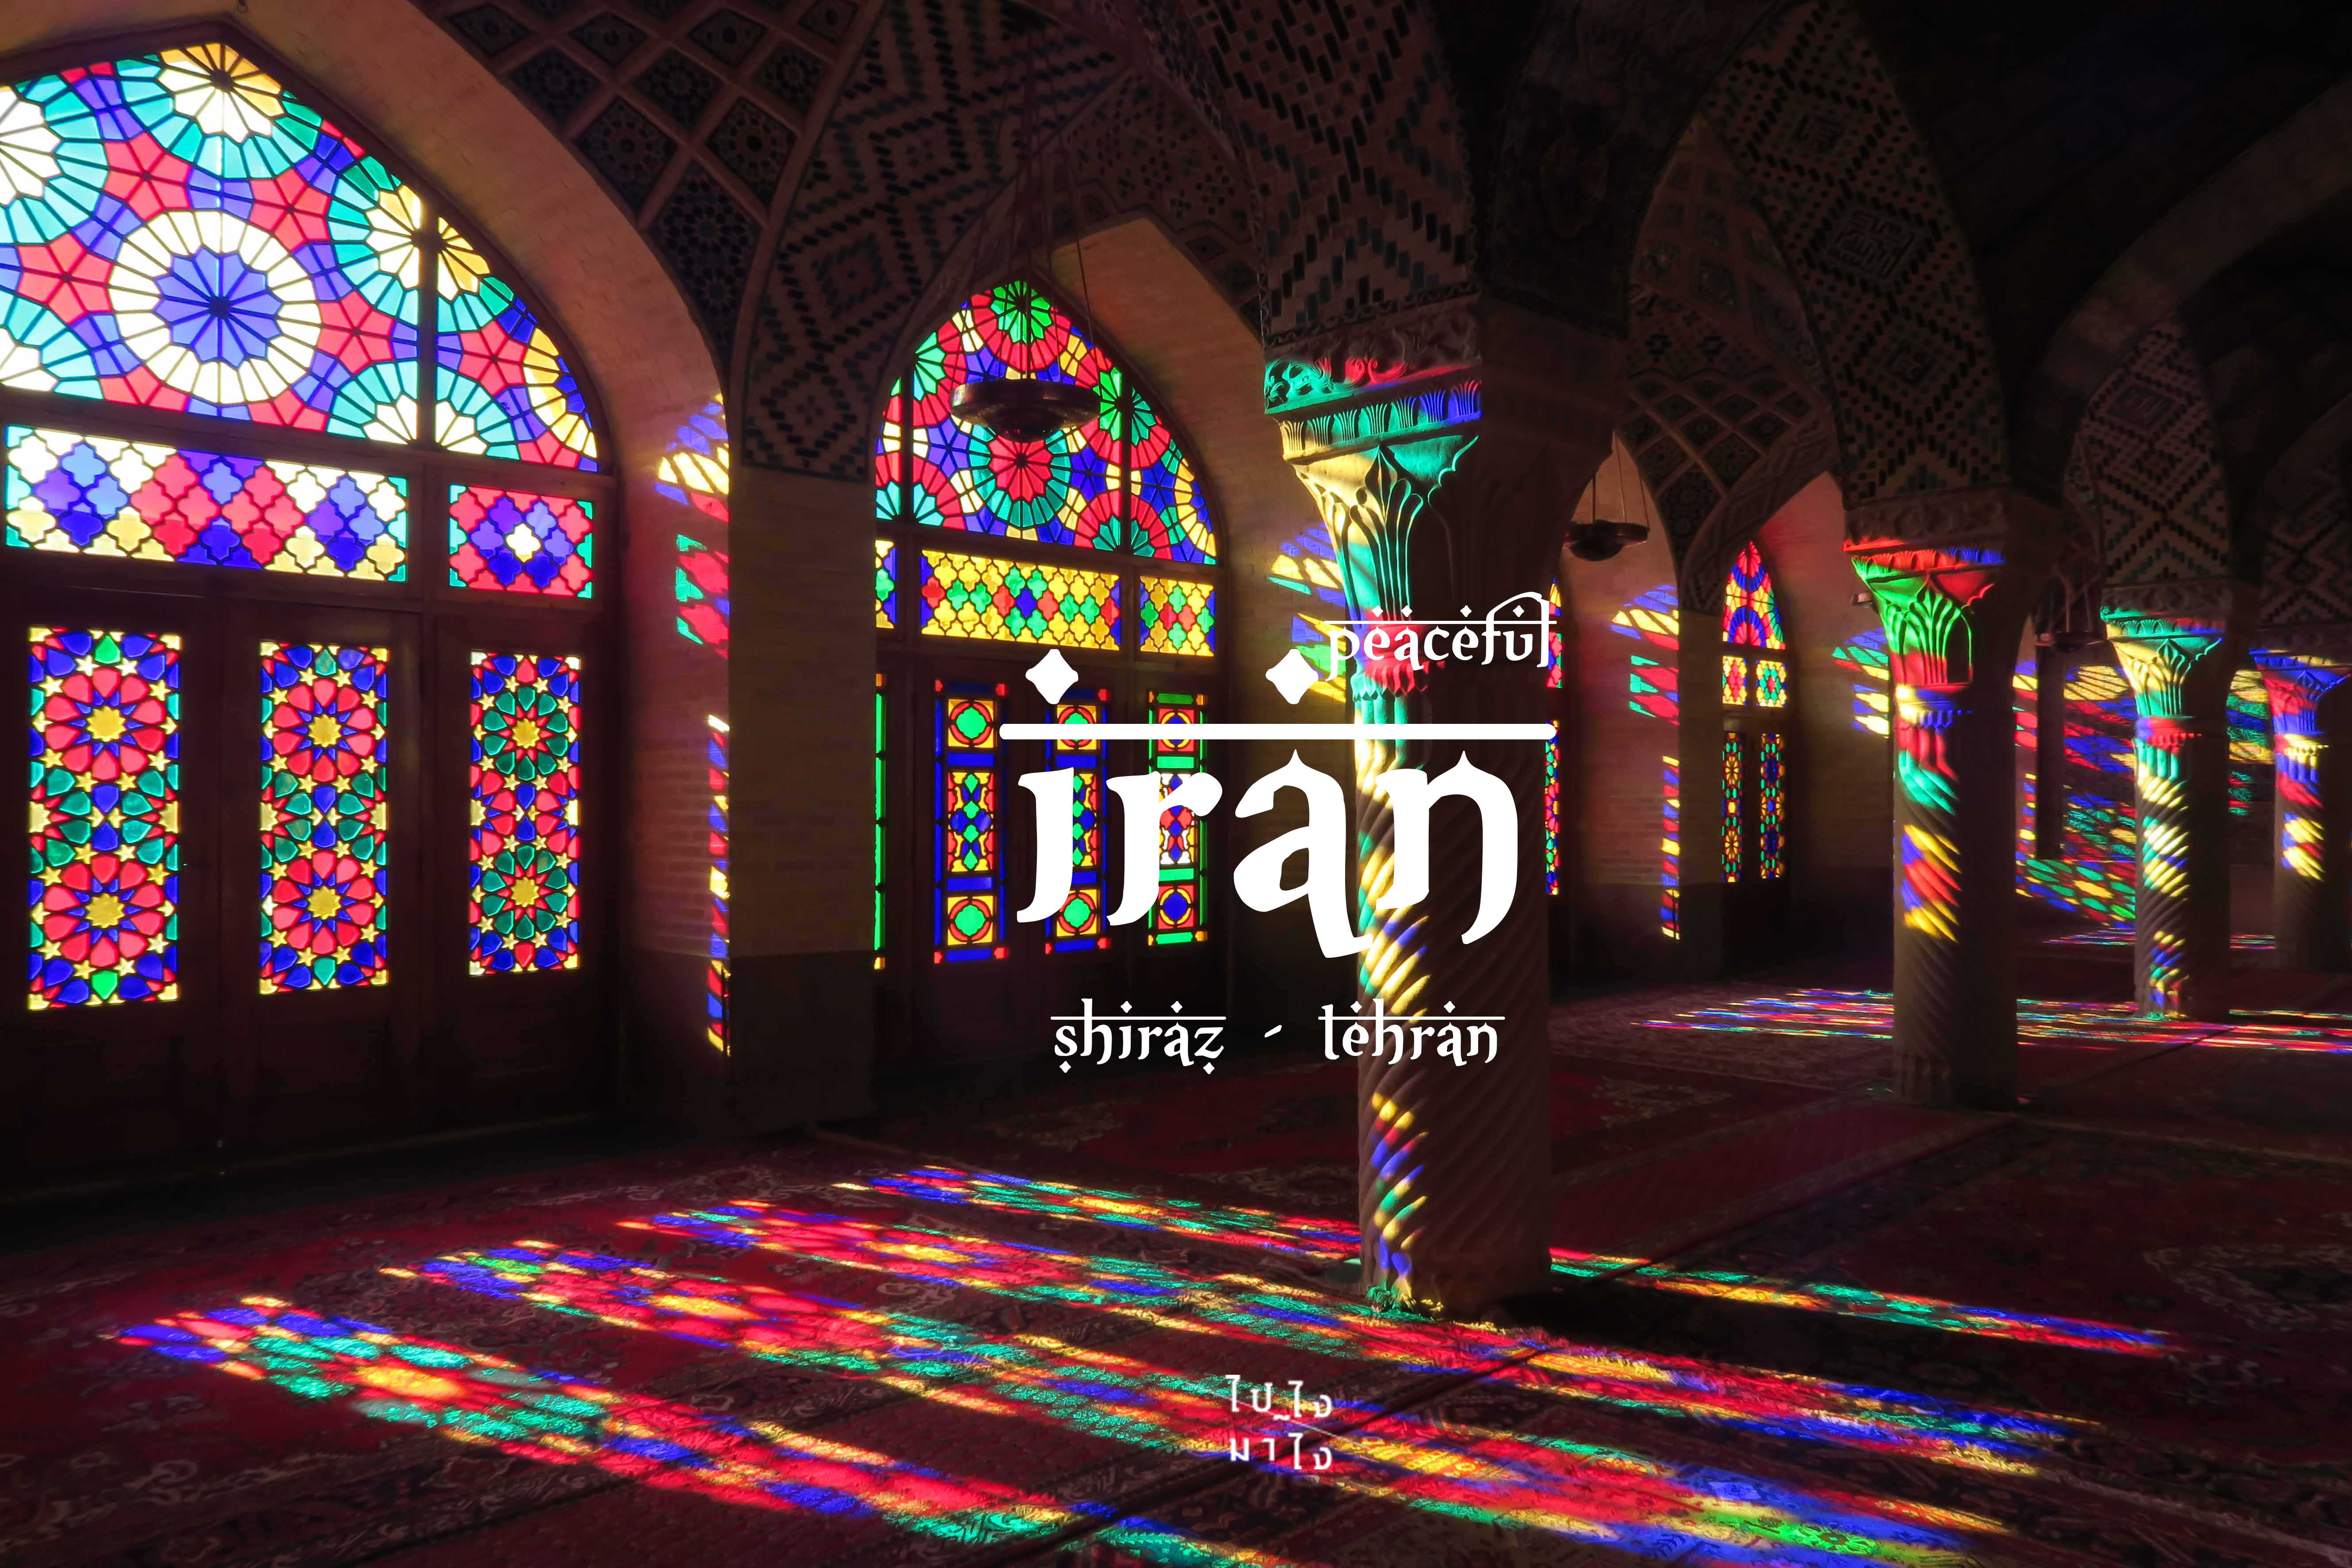 Peaceful IRAN.